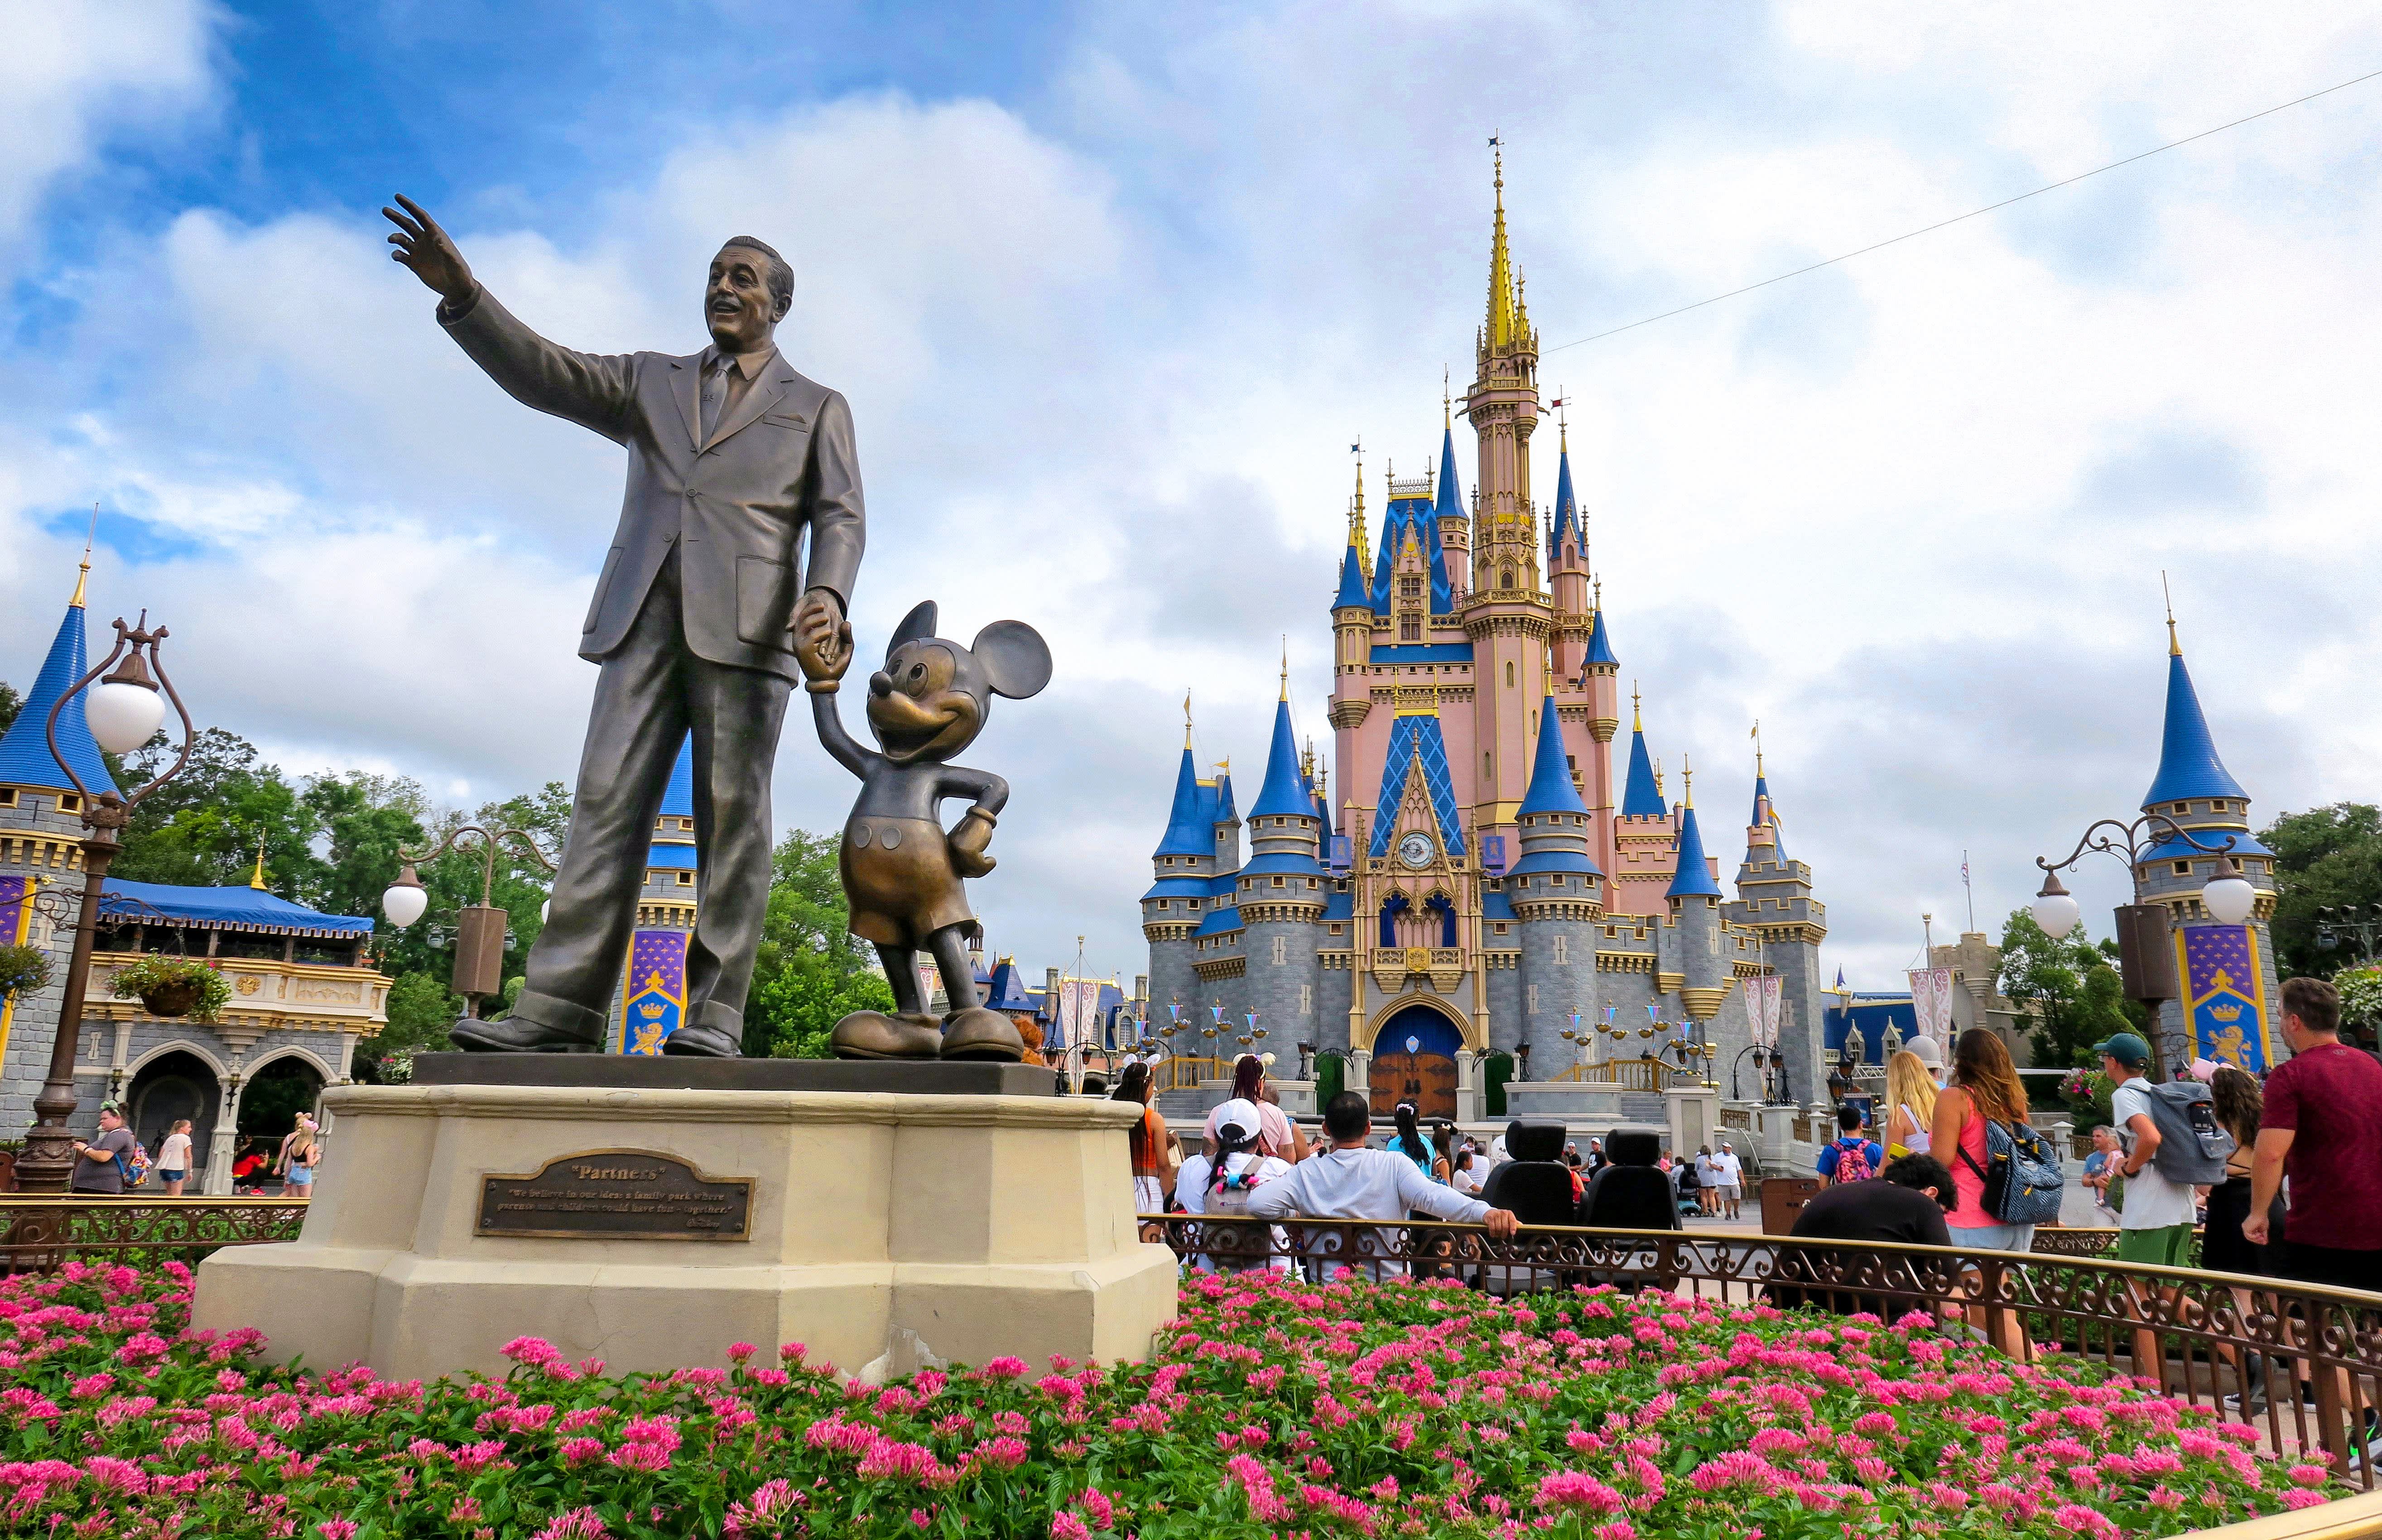 Disney (DIS) earnings report Q4 2023